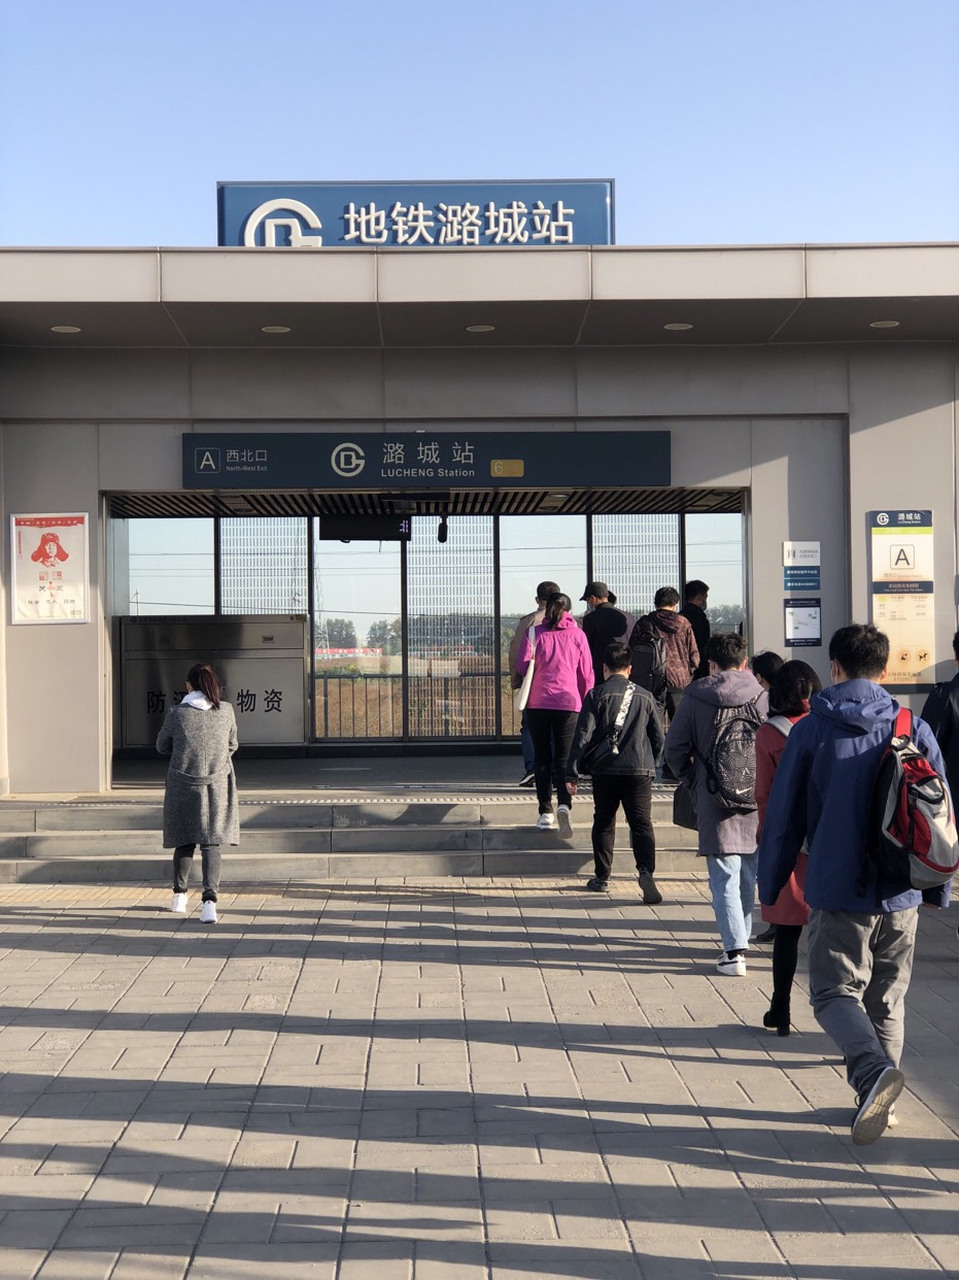 北京头条# 潞城地铁站,可能是很多北漂一族日常进京的第一站.